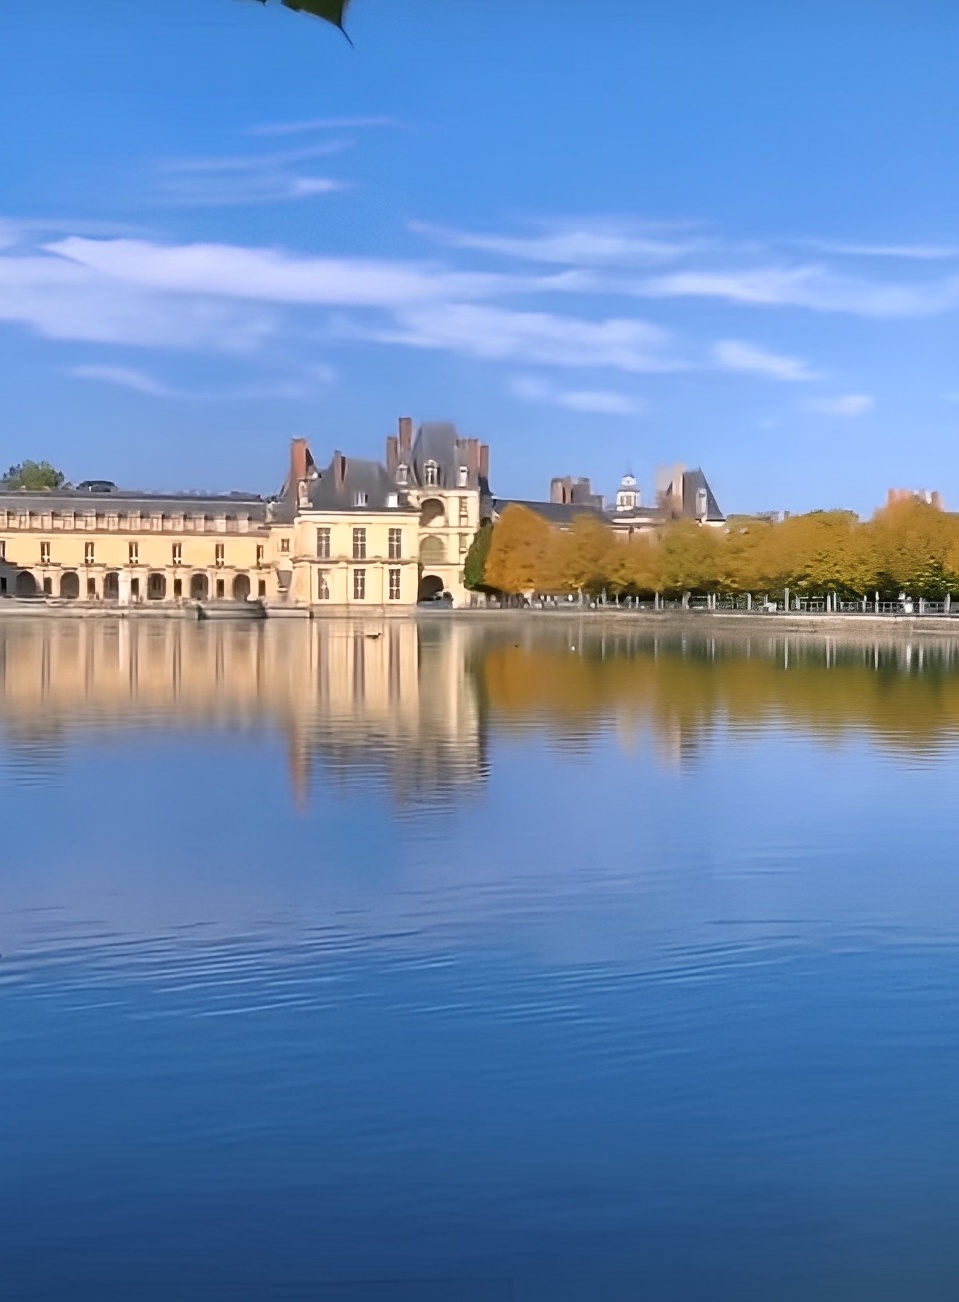 #那些最美的建筑 可惜，大多数游客的脚步止于巴黎，其实枫丹白露离巴黎仅几十公里之遥。 枫丹白露宫